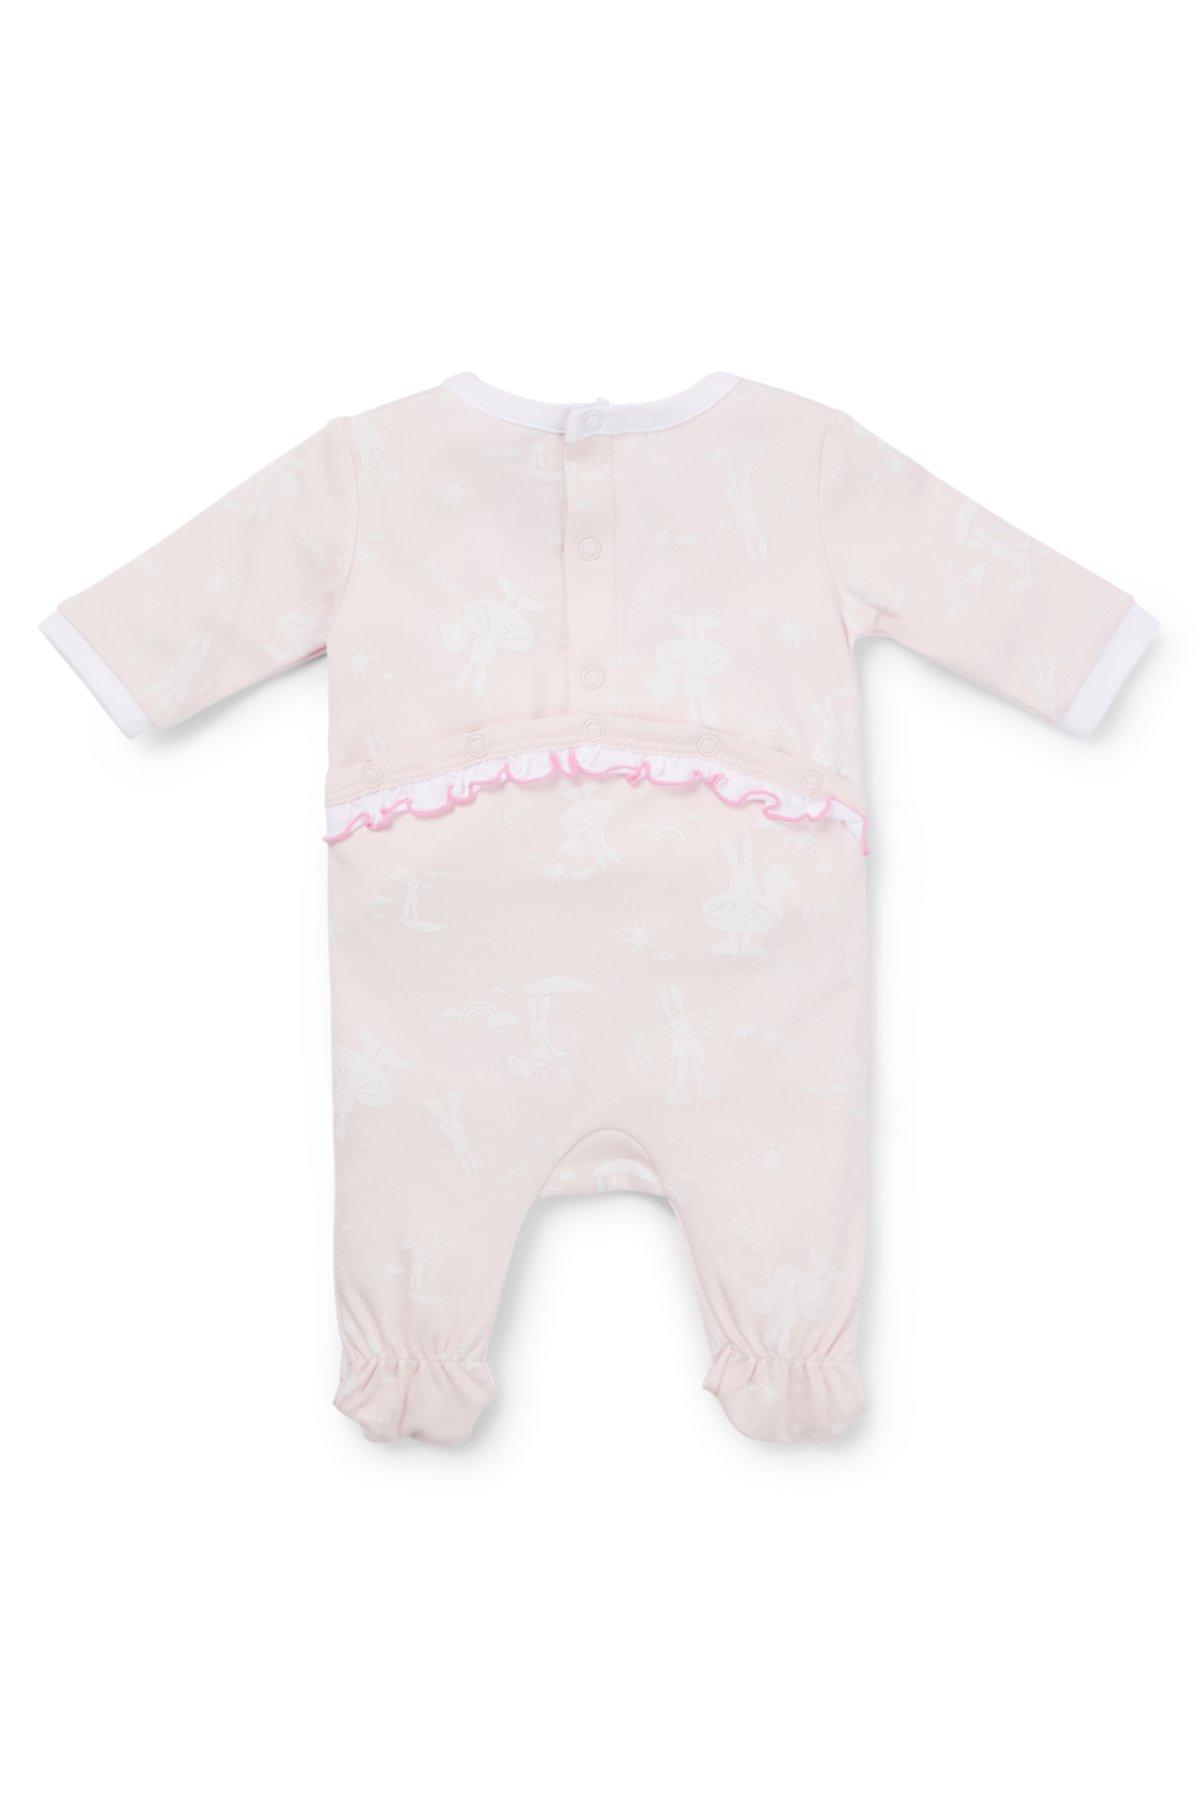 Baby Bodysuit Ribbed Sleepsuit Beanie Hat Bib - Gum & Berries